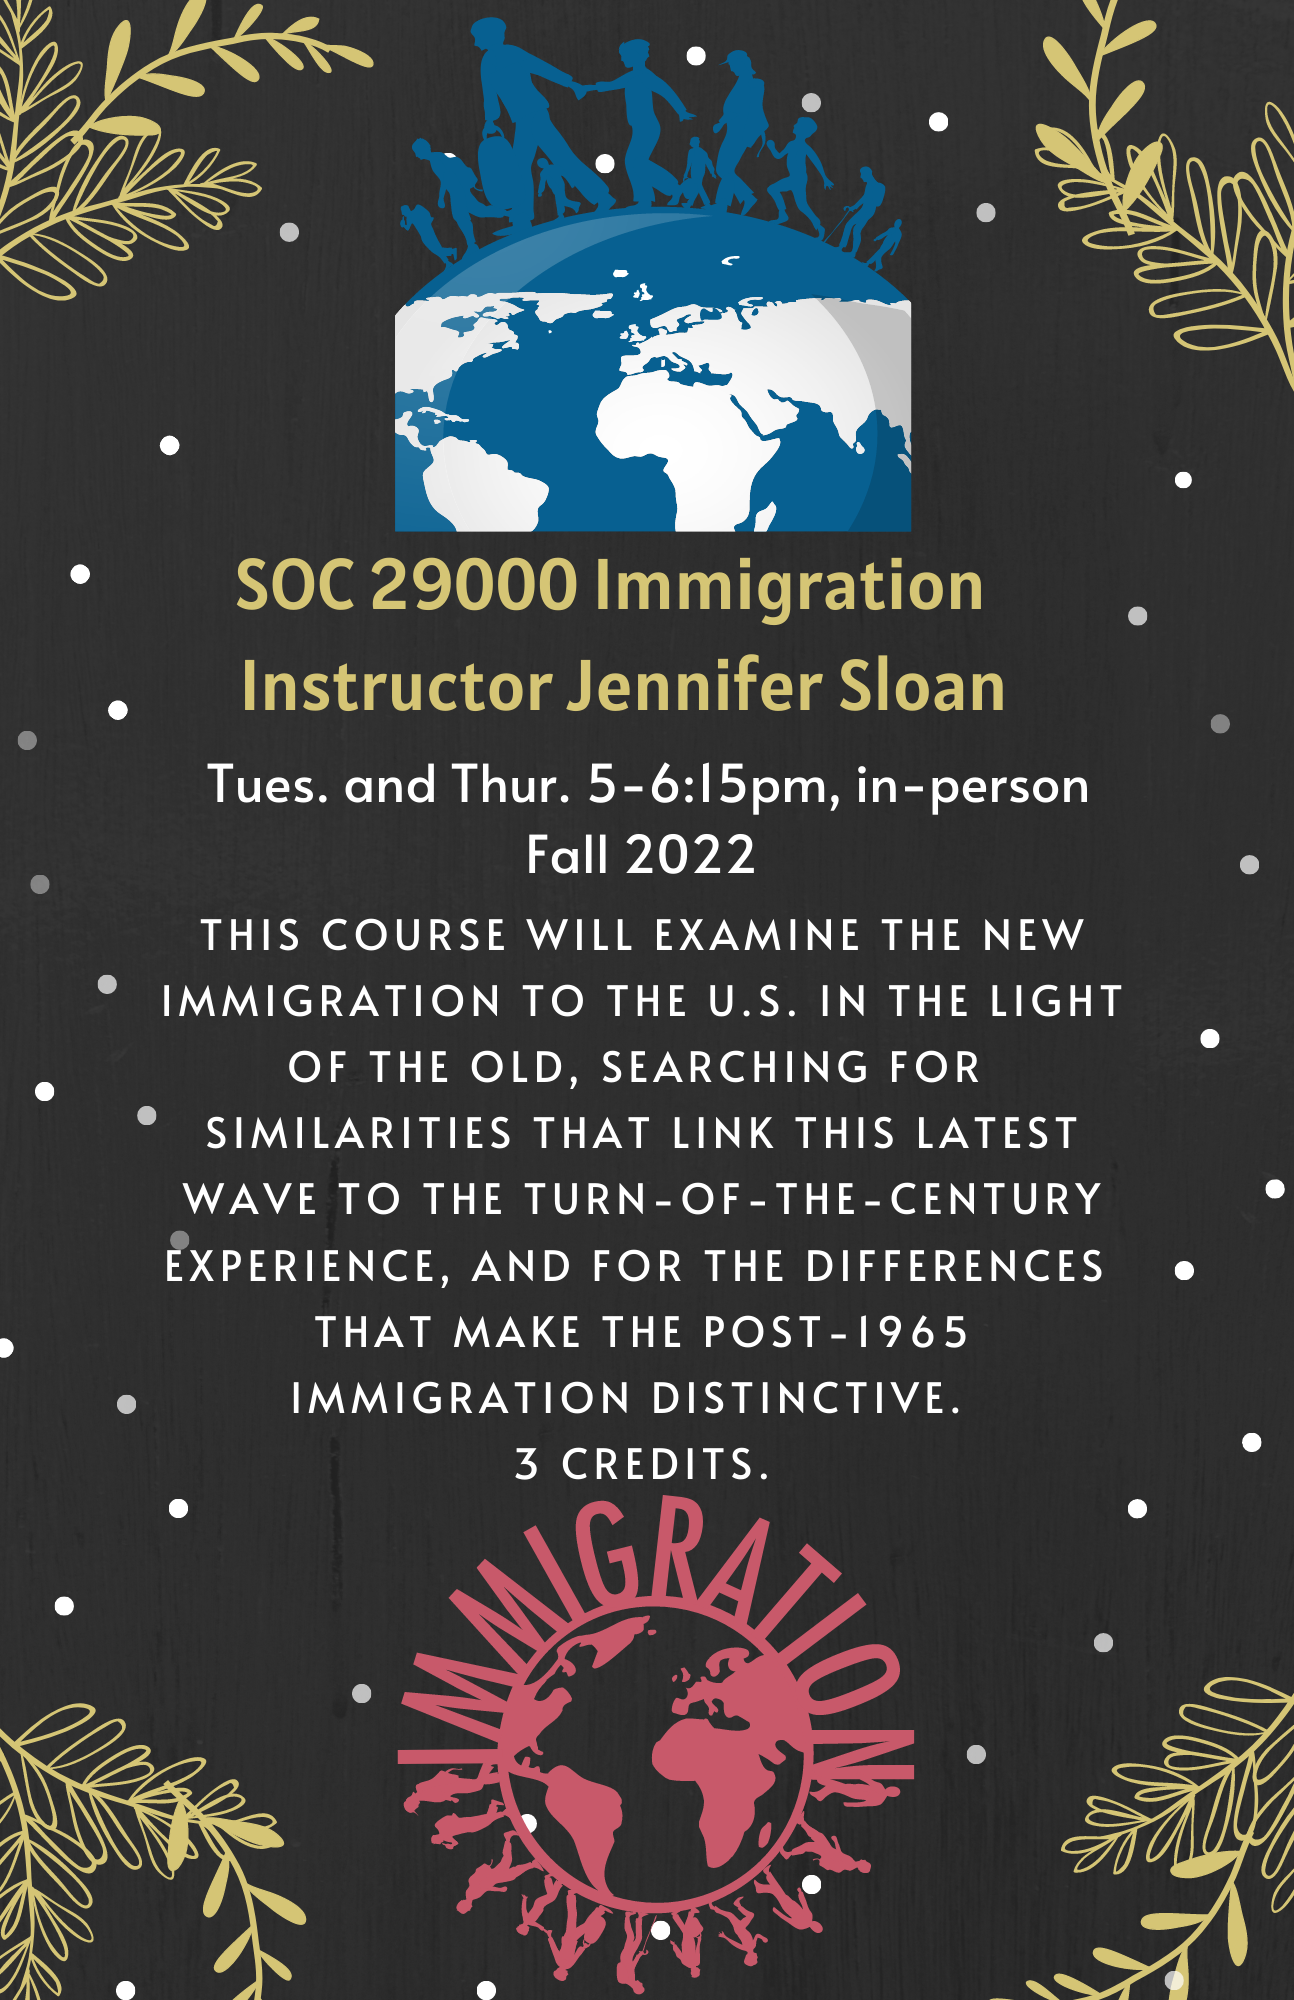 Immigration Course Description